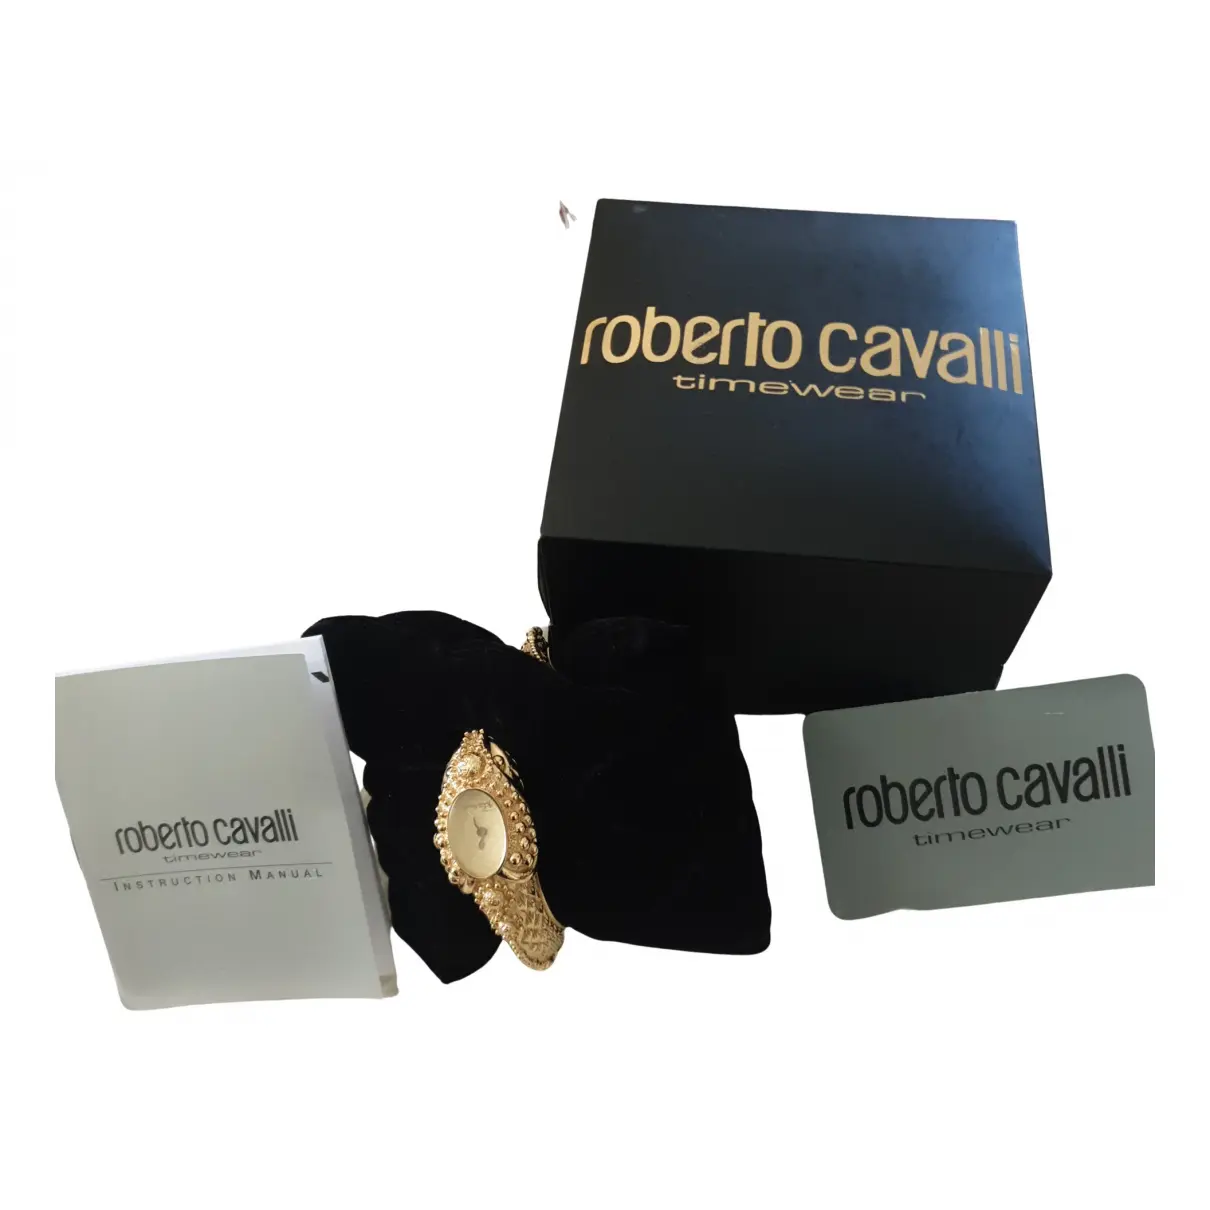 Buy Roberto Cavalli Watch online